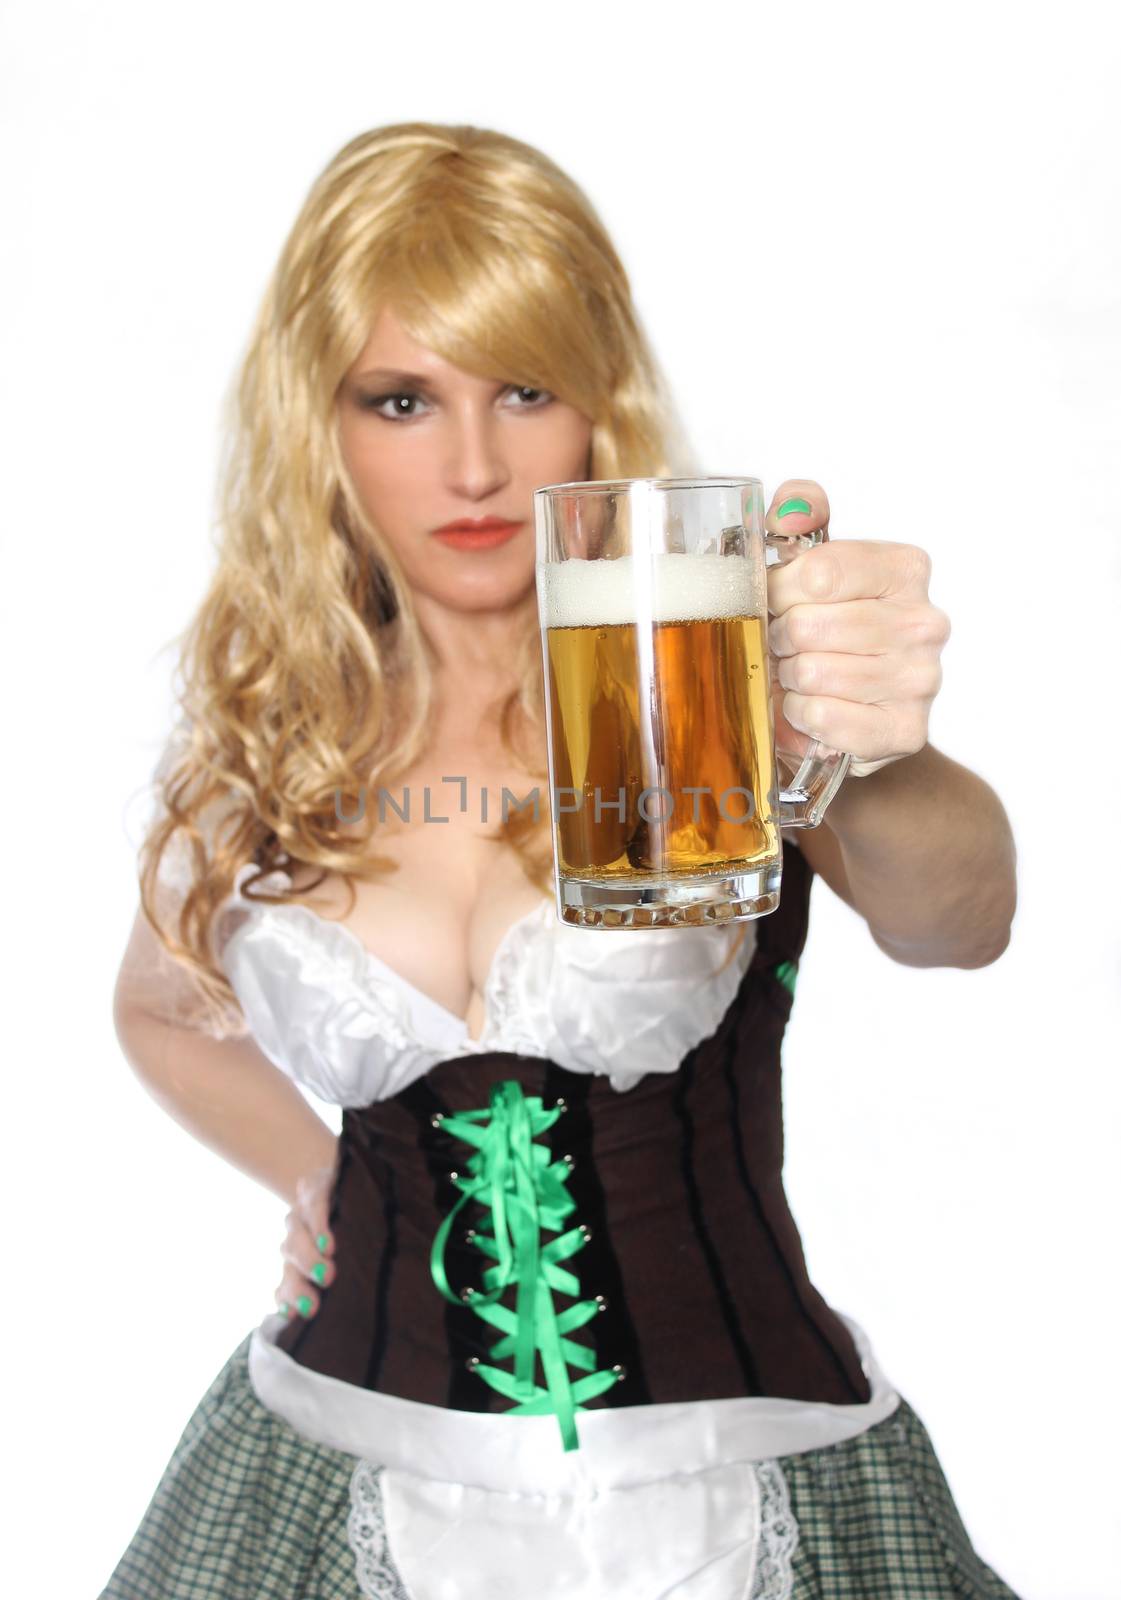 Tavern Waitress With Beer Mug Isolated on White Background